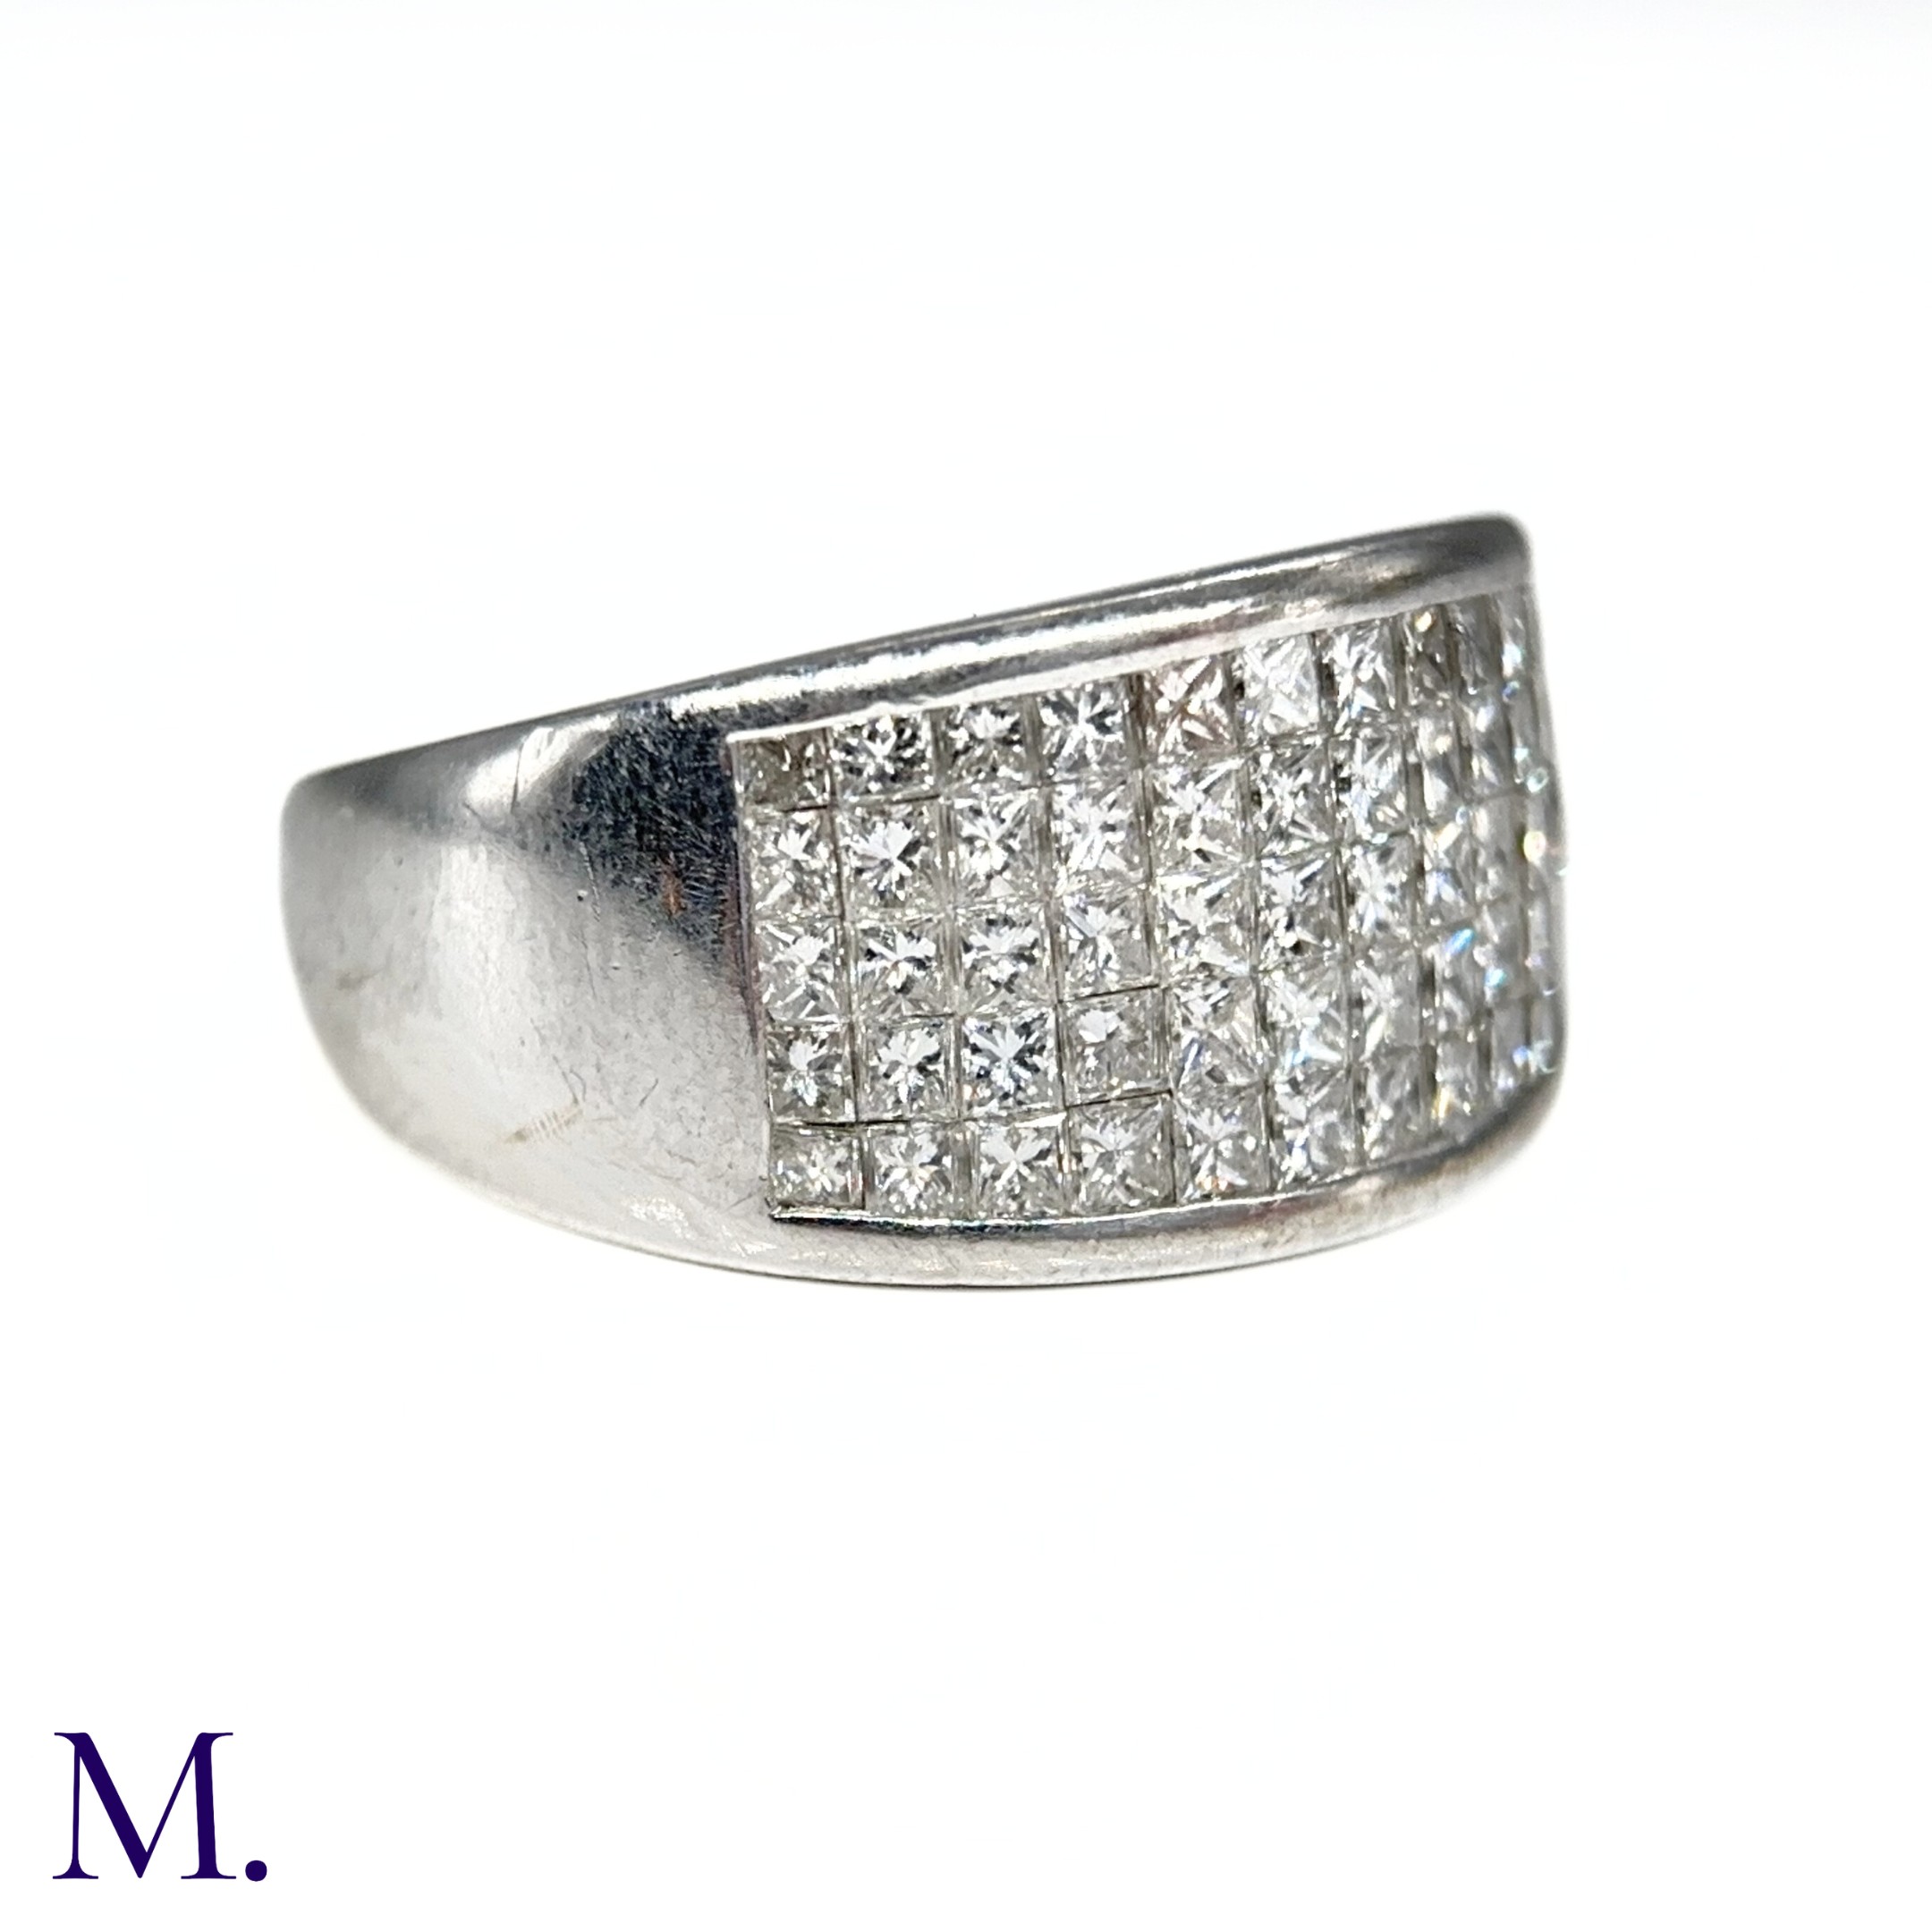 An 5-Row Asscher-cut Diamond Ring - Image 6 of 7